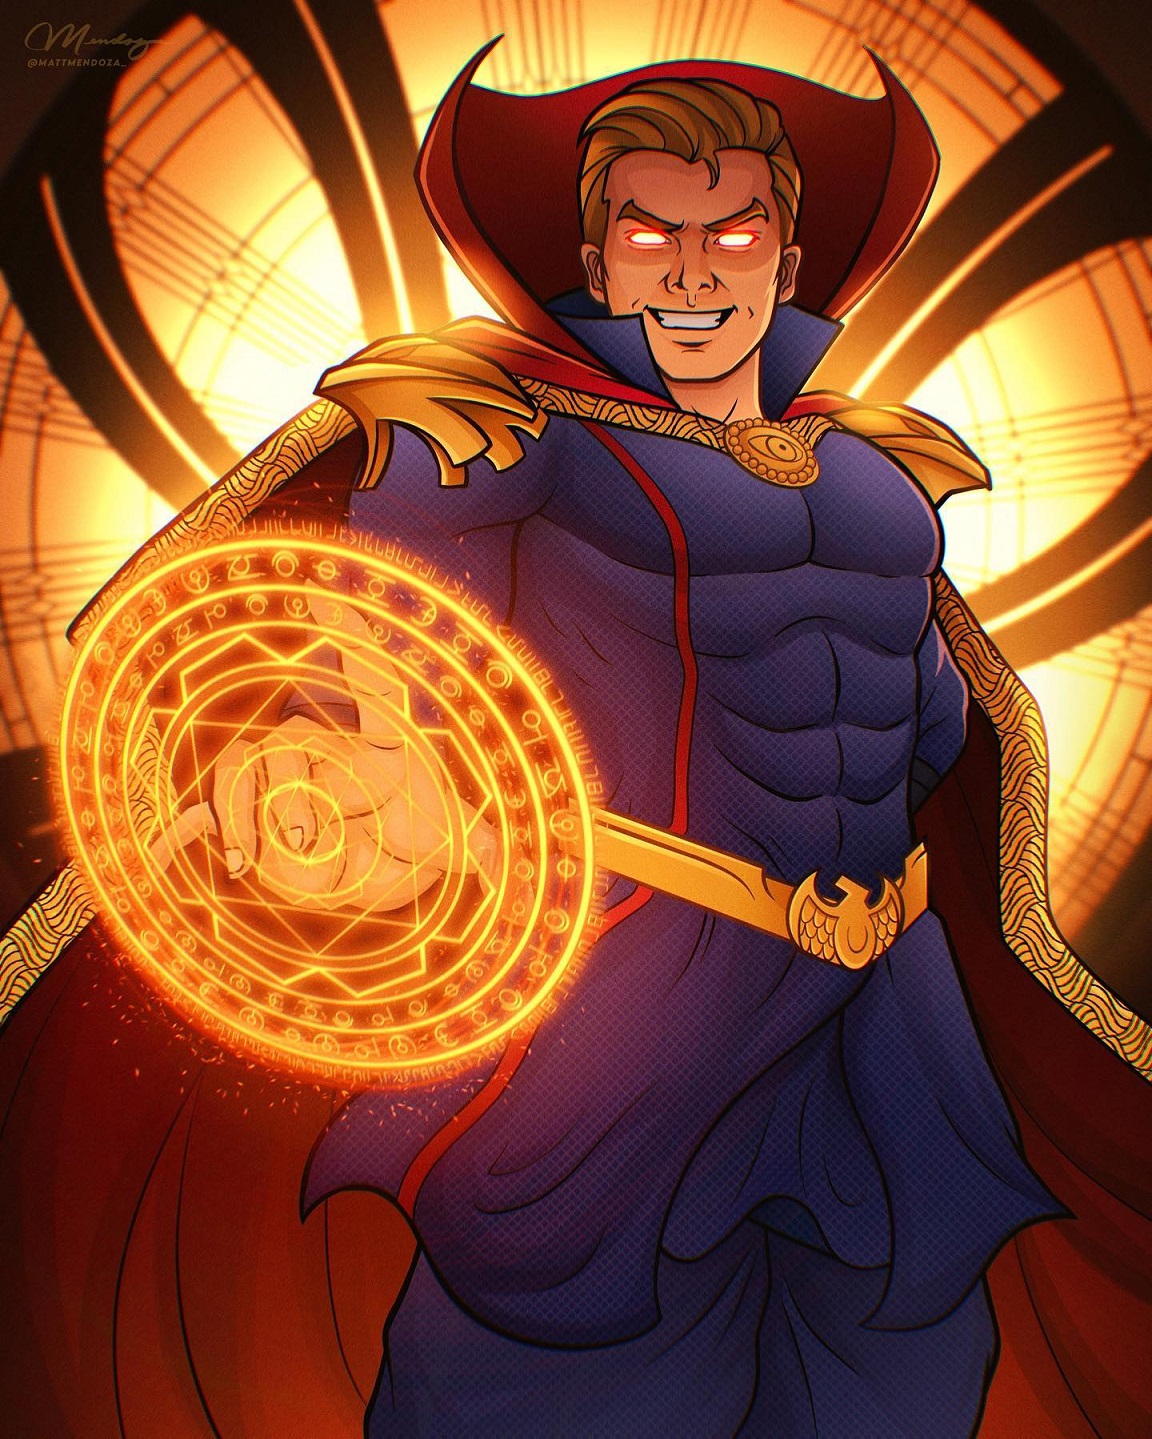 Artista imaginou o Capitão Pátria de The Boys como o Mago Supremo da Marvel